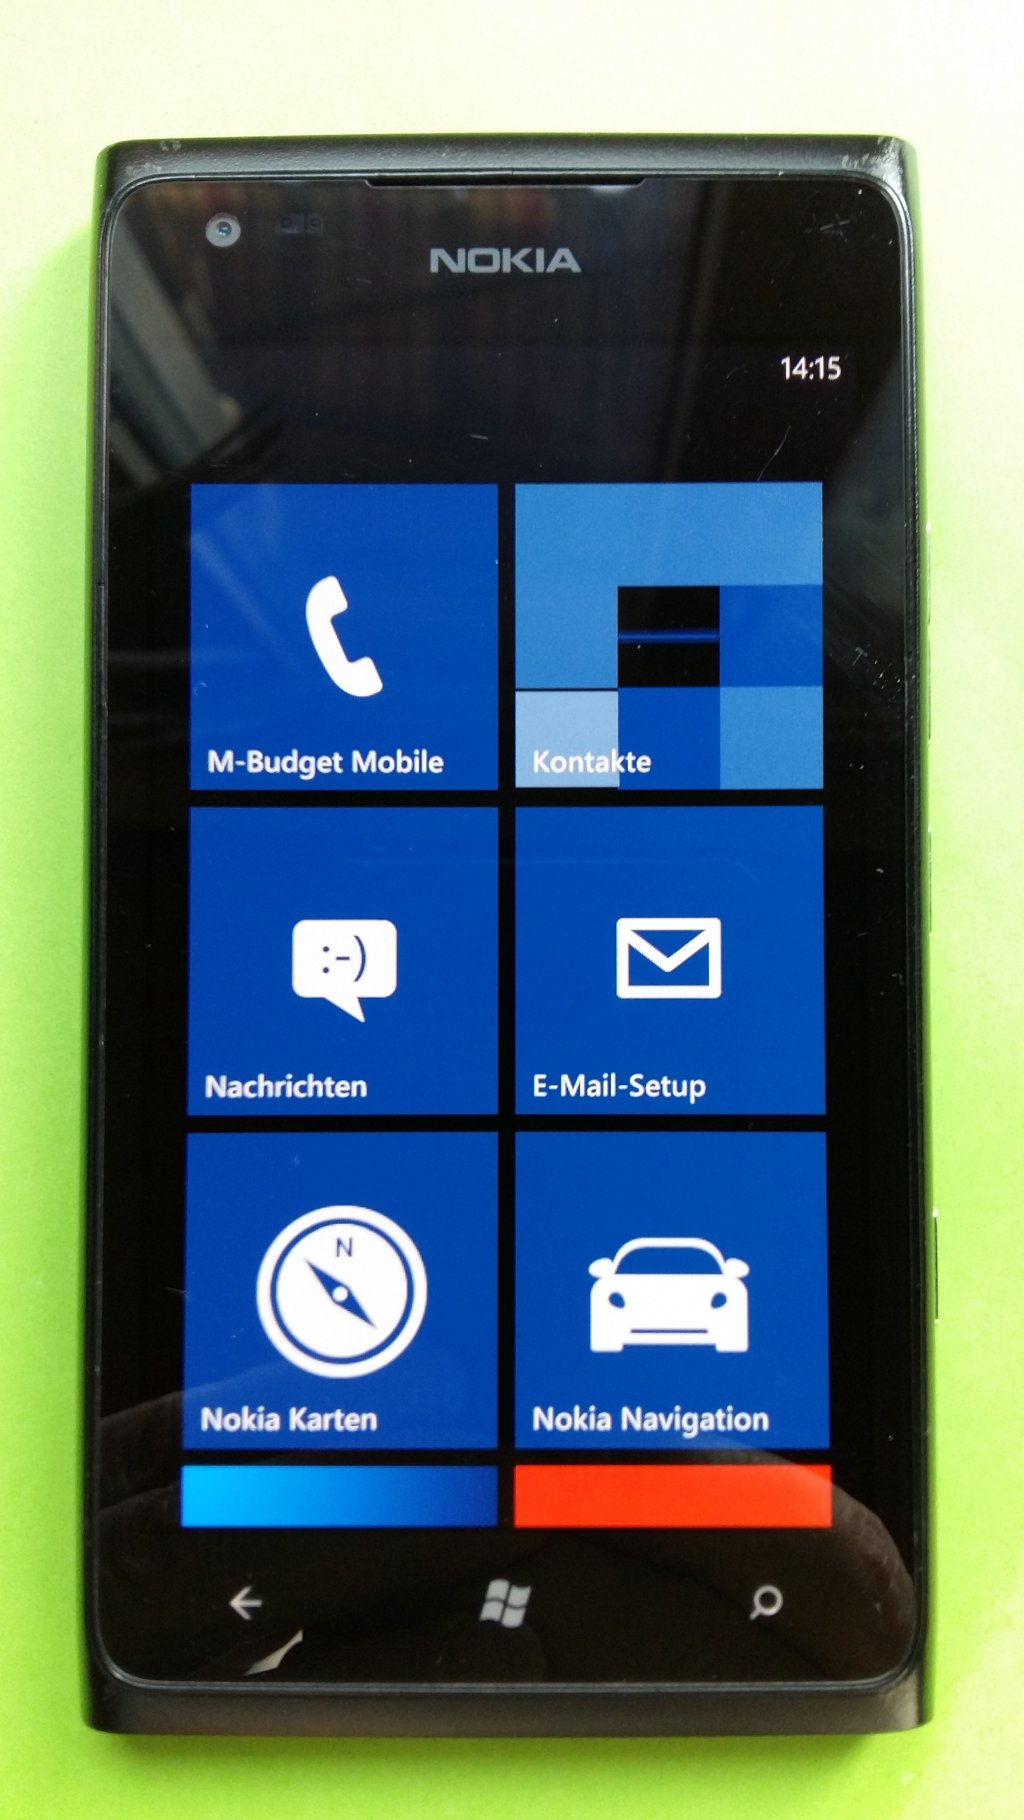 image-7870356-Nokia_900_Lumia_(1)1.w640.jpg